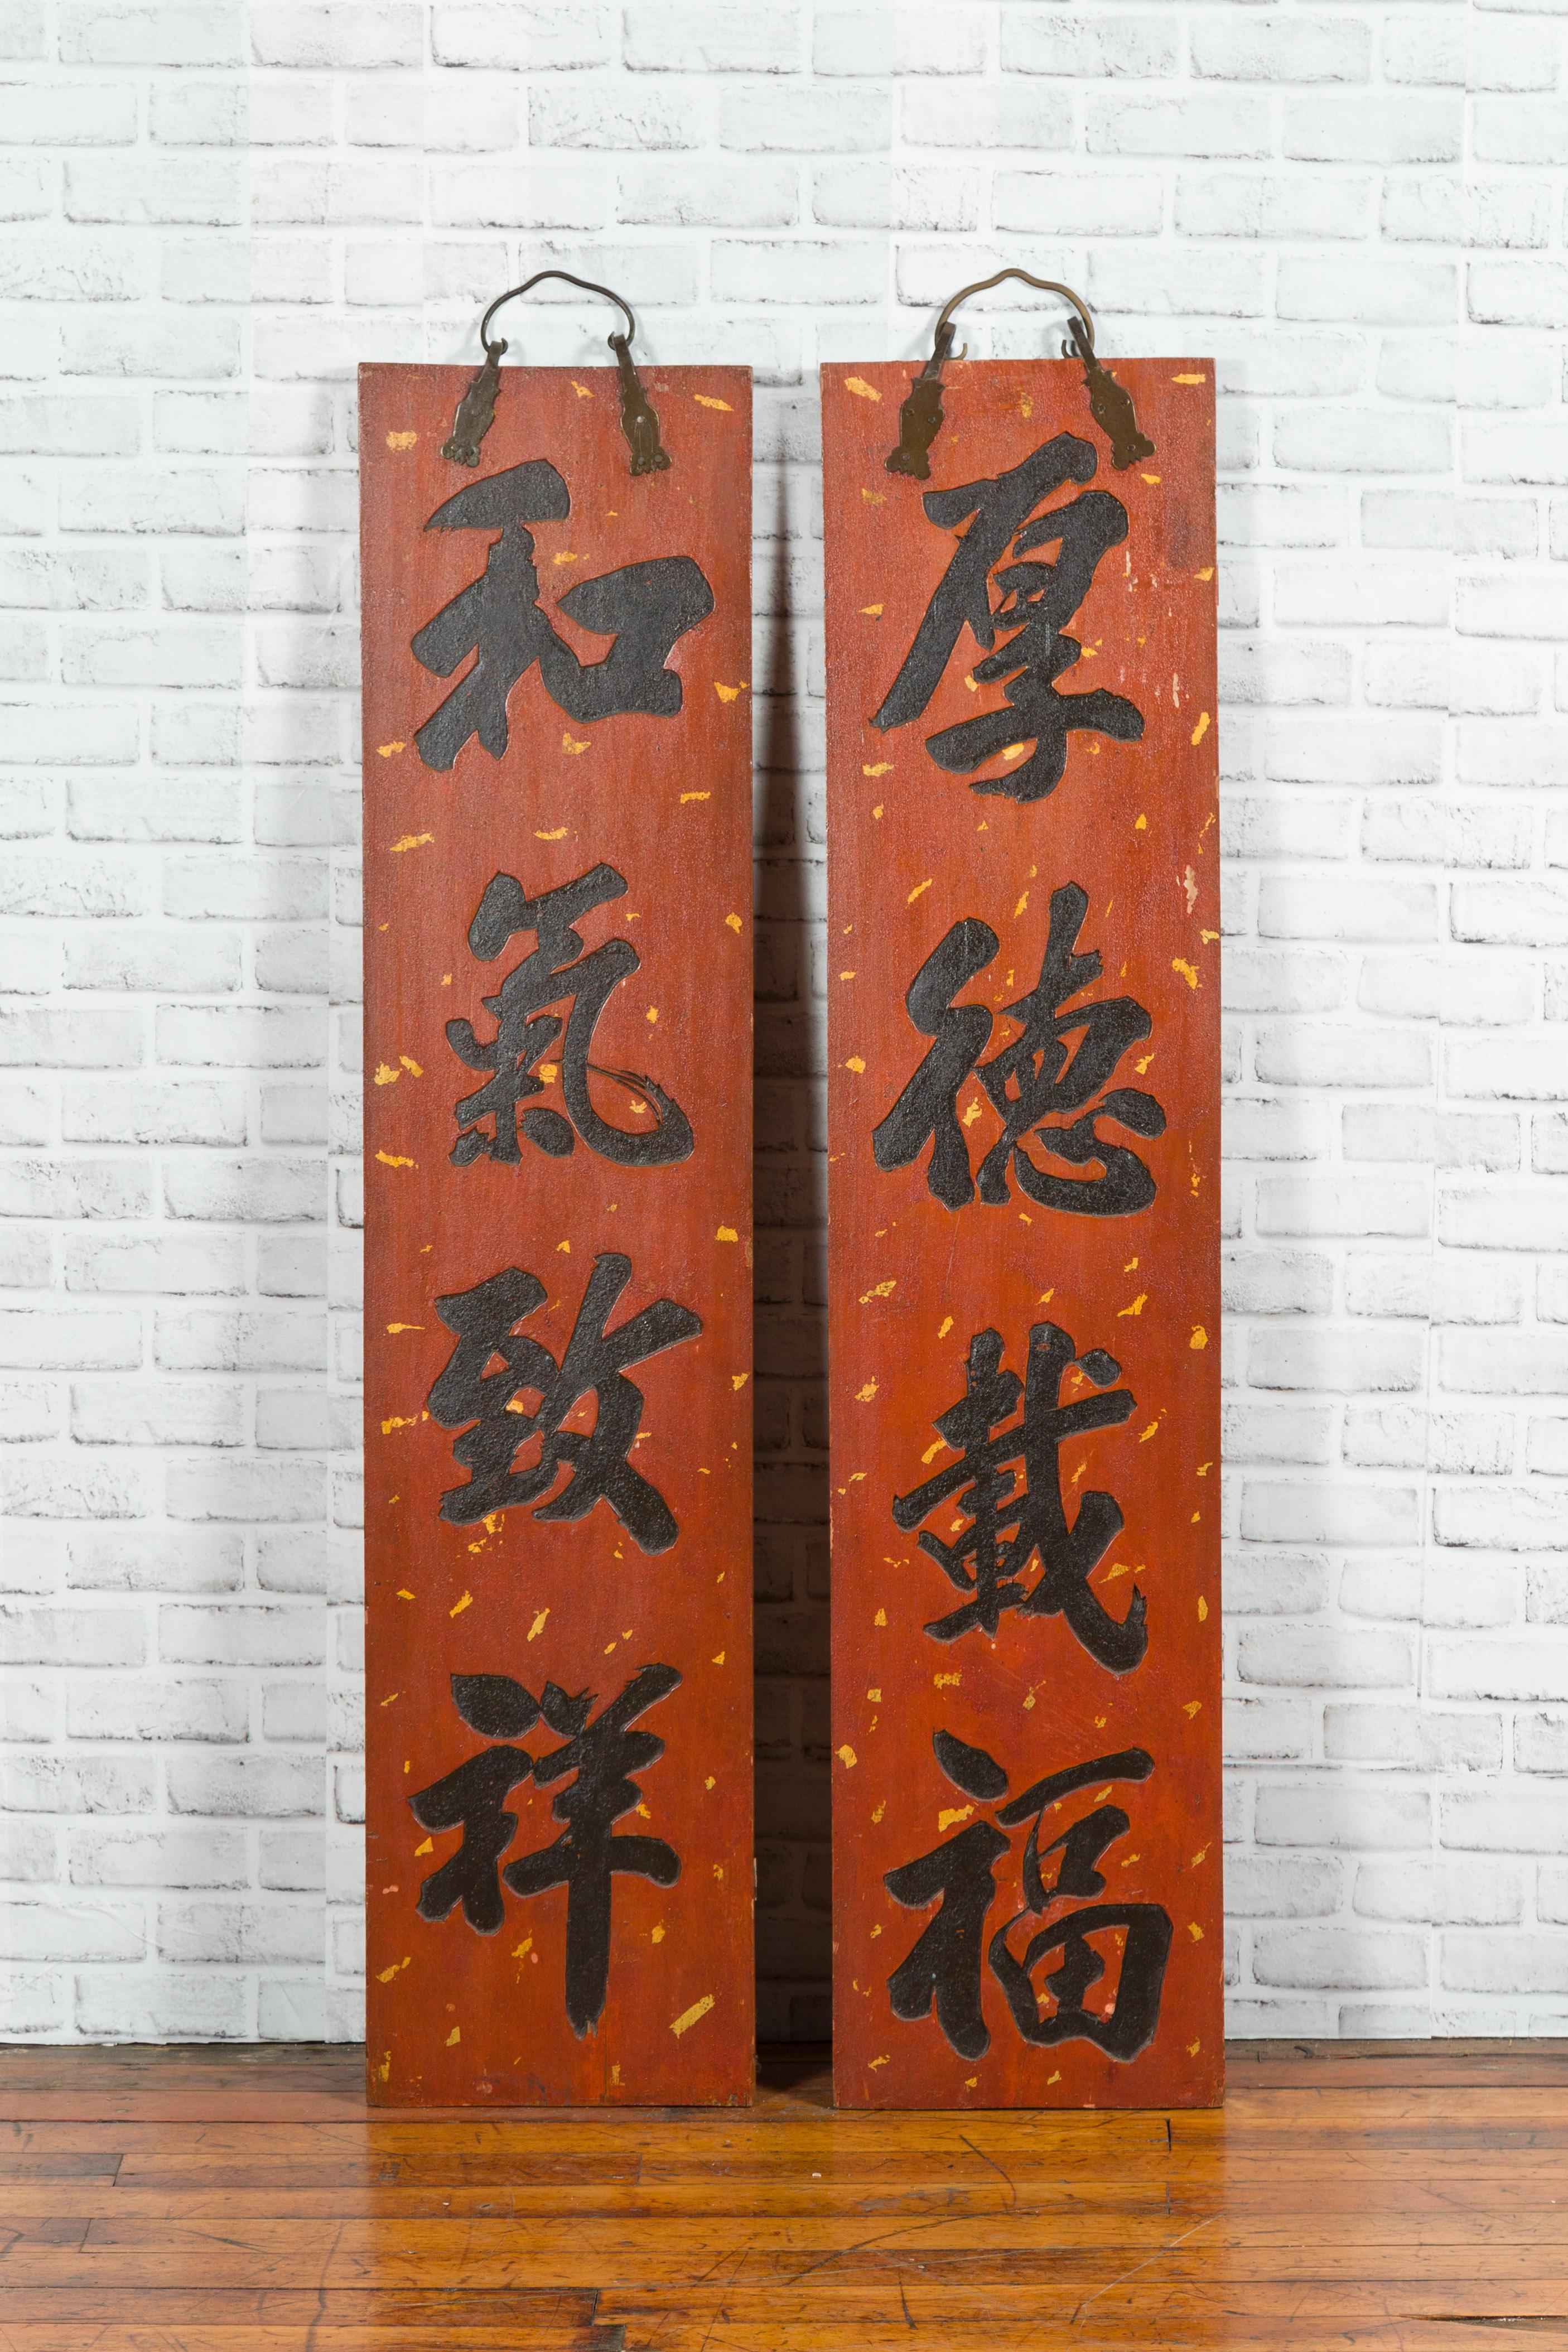 Une paire d'enseignes chinoises rouges et noires du début du 20e siècle avec calligraphie sculptée et laquée à la main. Créée en Chine au cours du premier quart du XXe siècle, cette paire de panneaux verticaux attire notre attention par sa